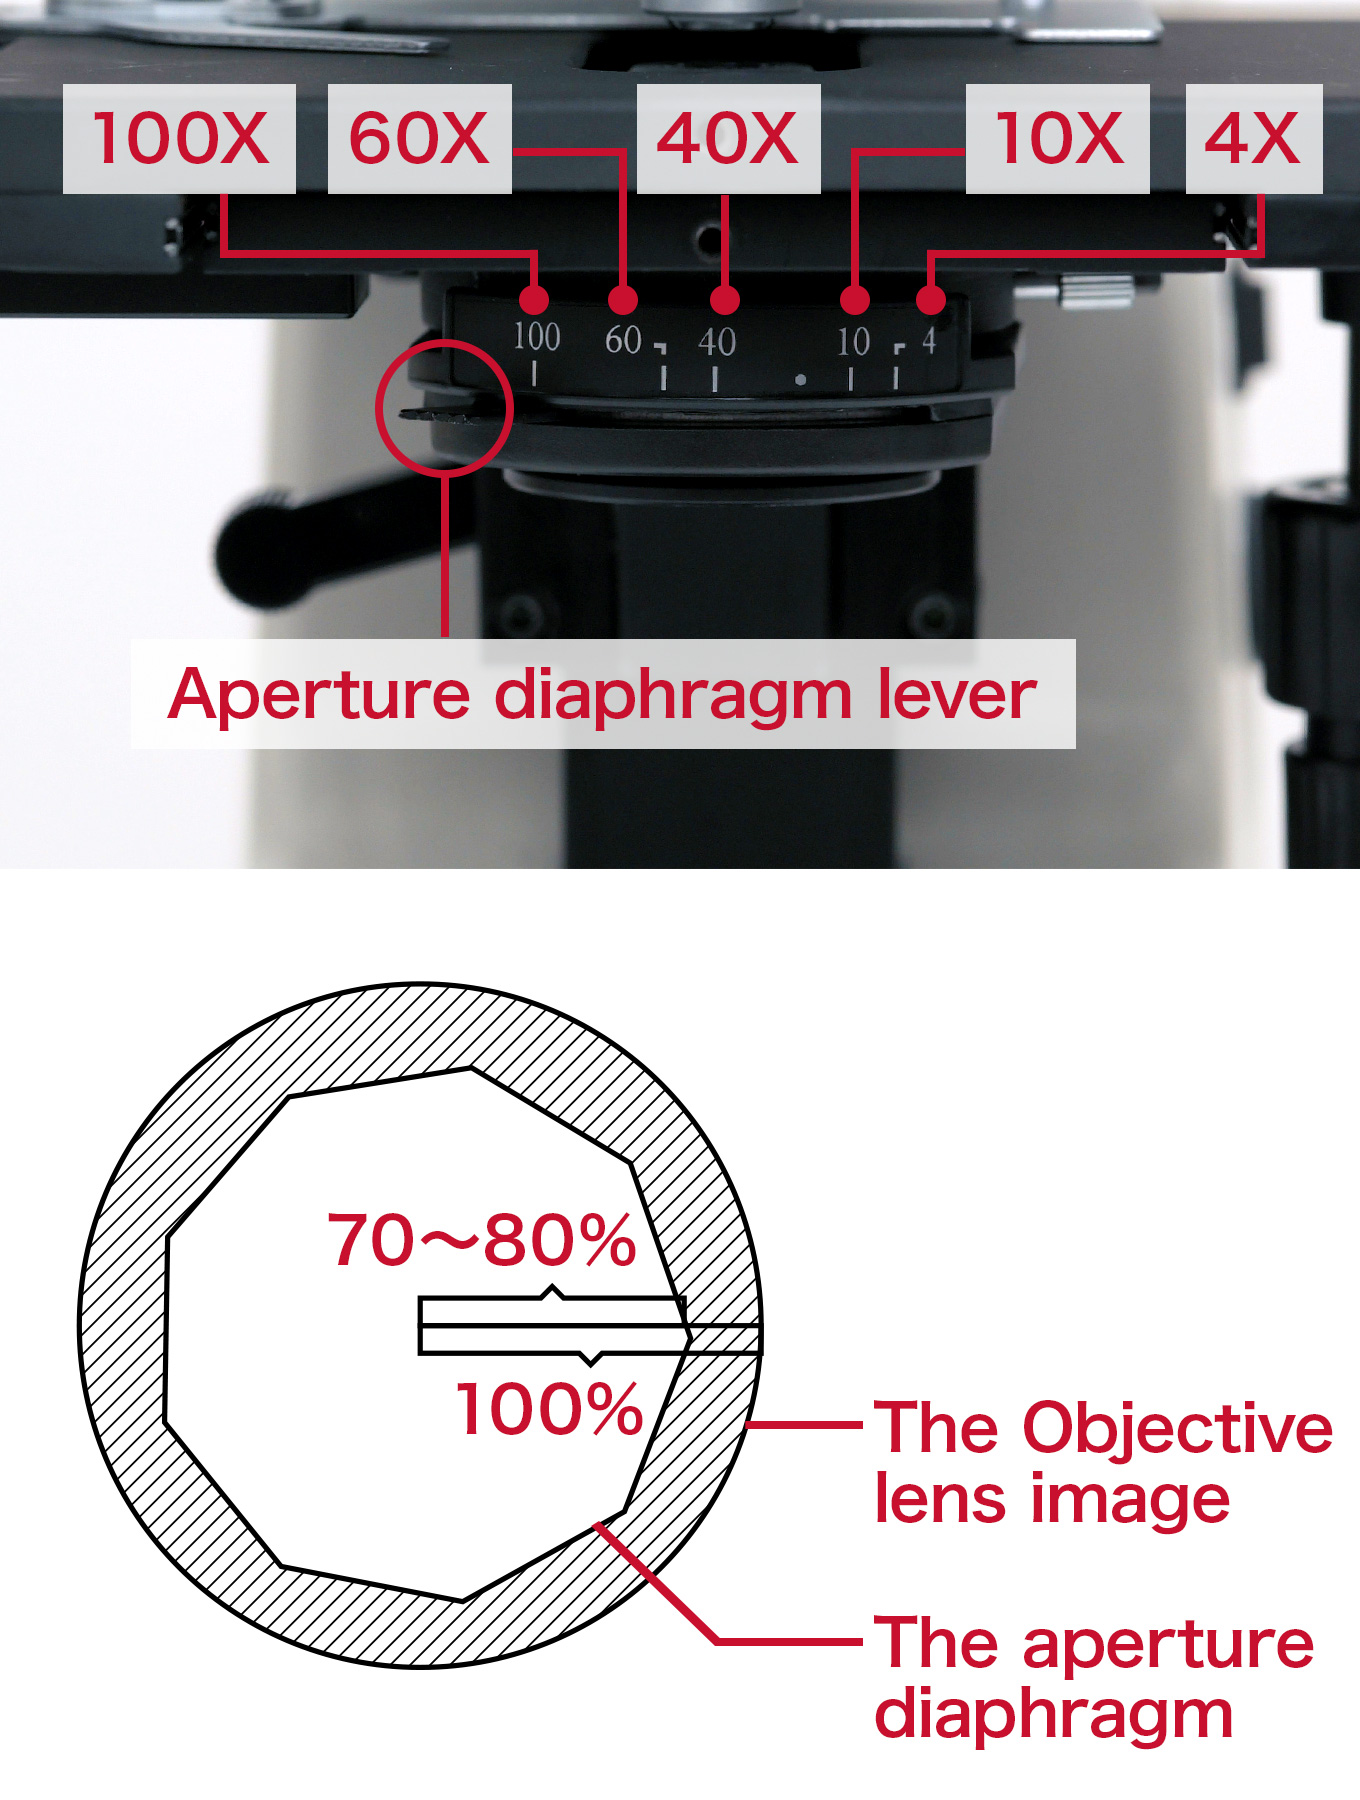 Align the aperture diaphragm lever